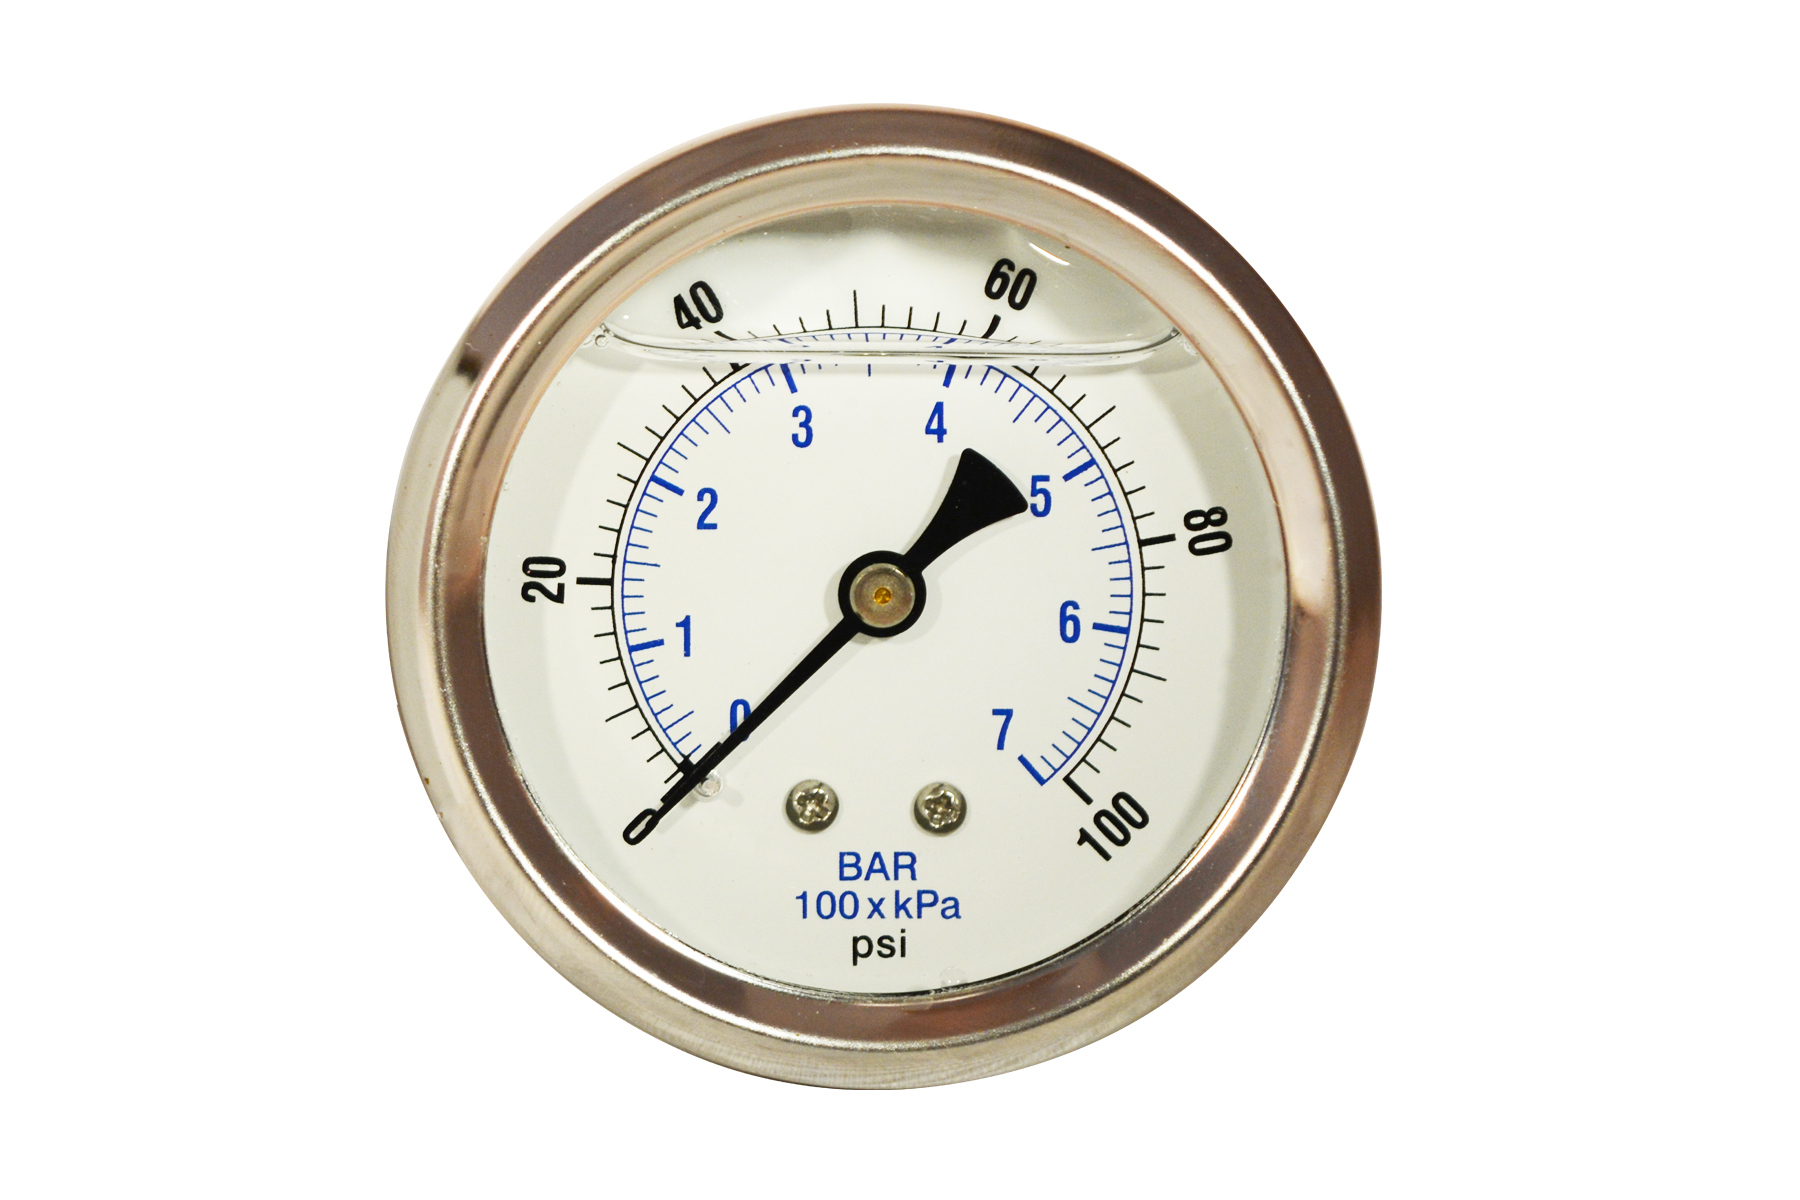 Zenport Zen-Tek Pressure Gauge BLPG100 0-100 PSI Back Mount Liquid Glycerin Pressure Gauge